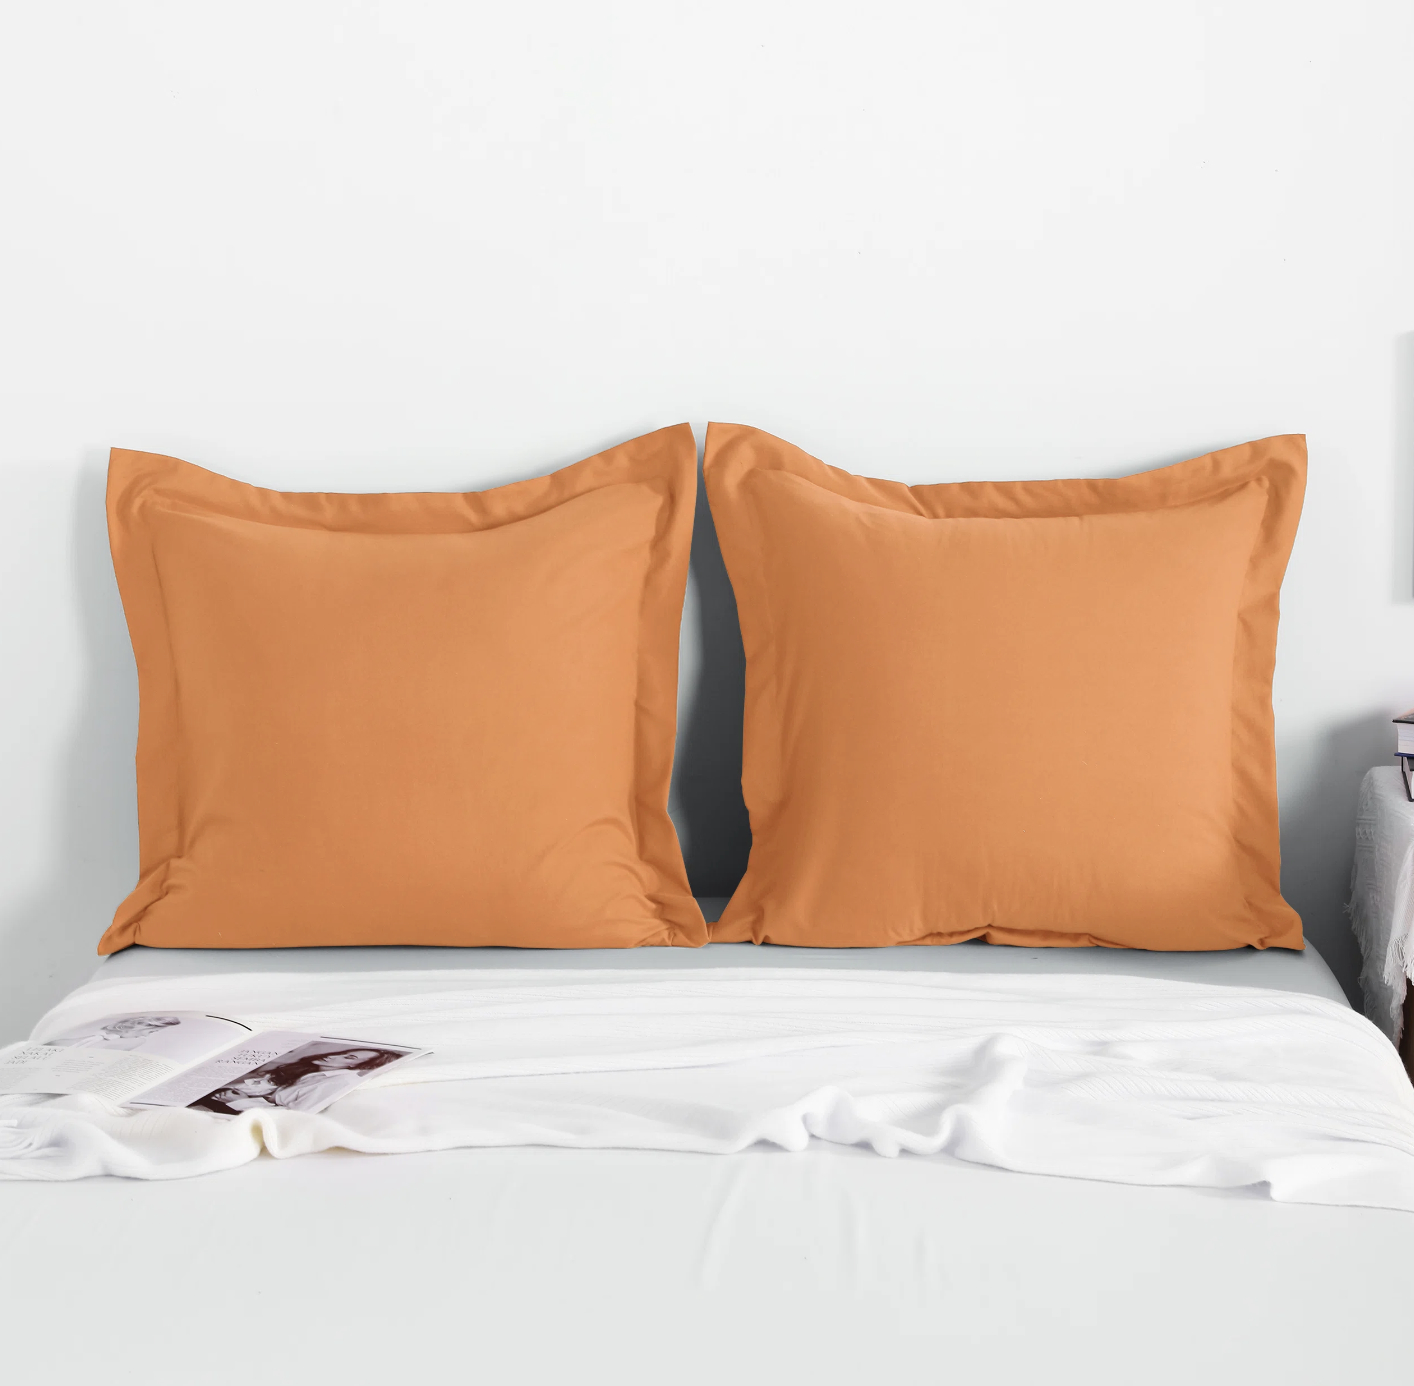 A set of two tan pillow shams